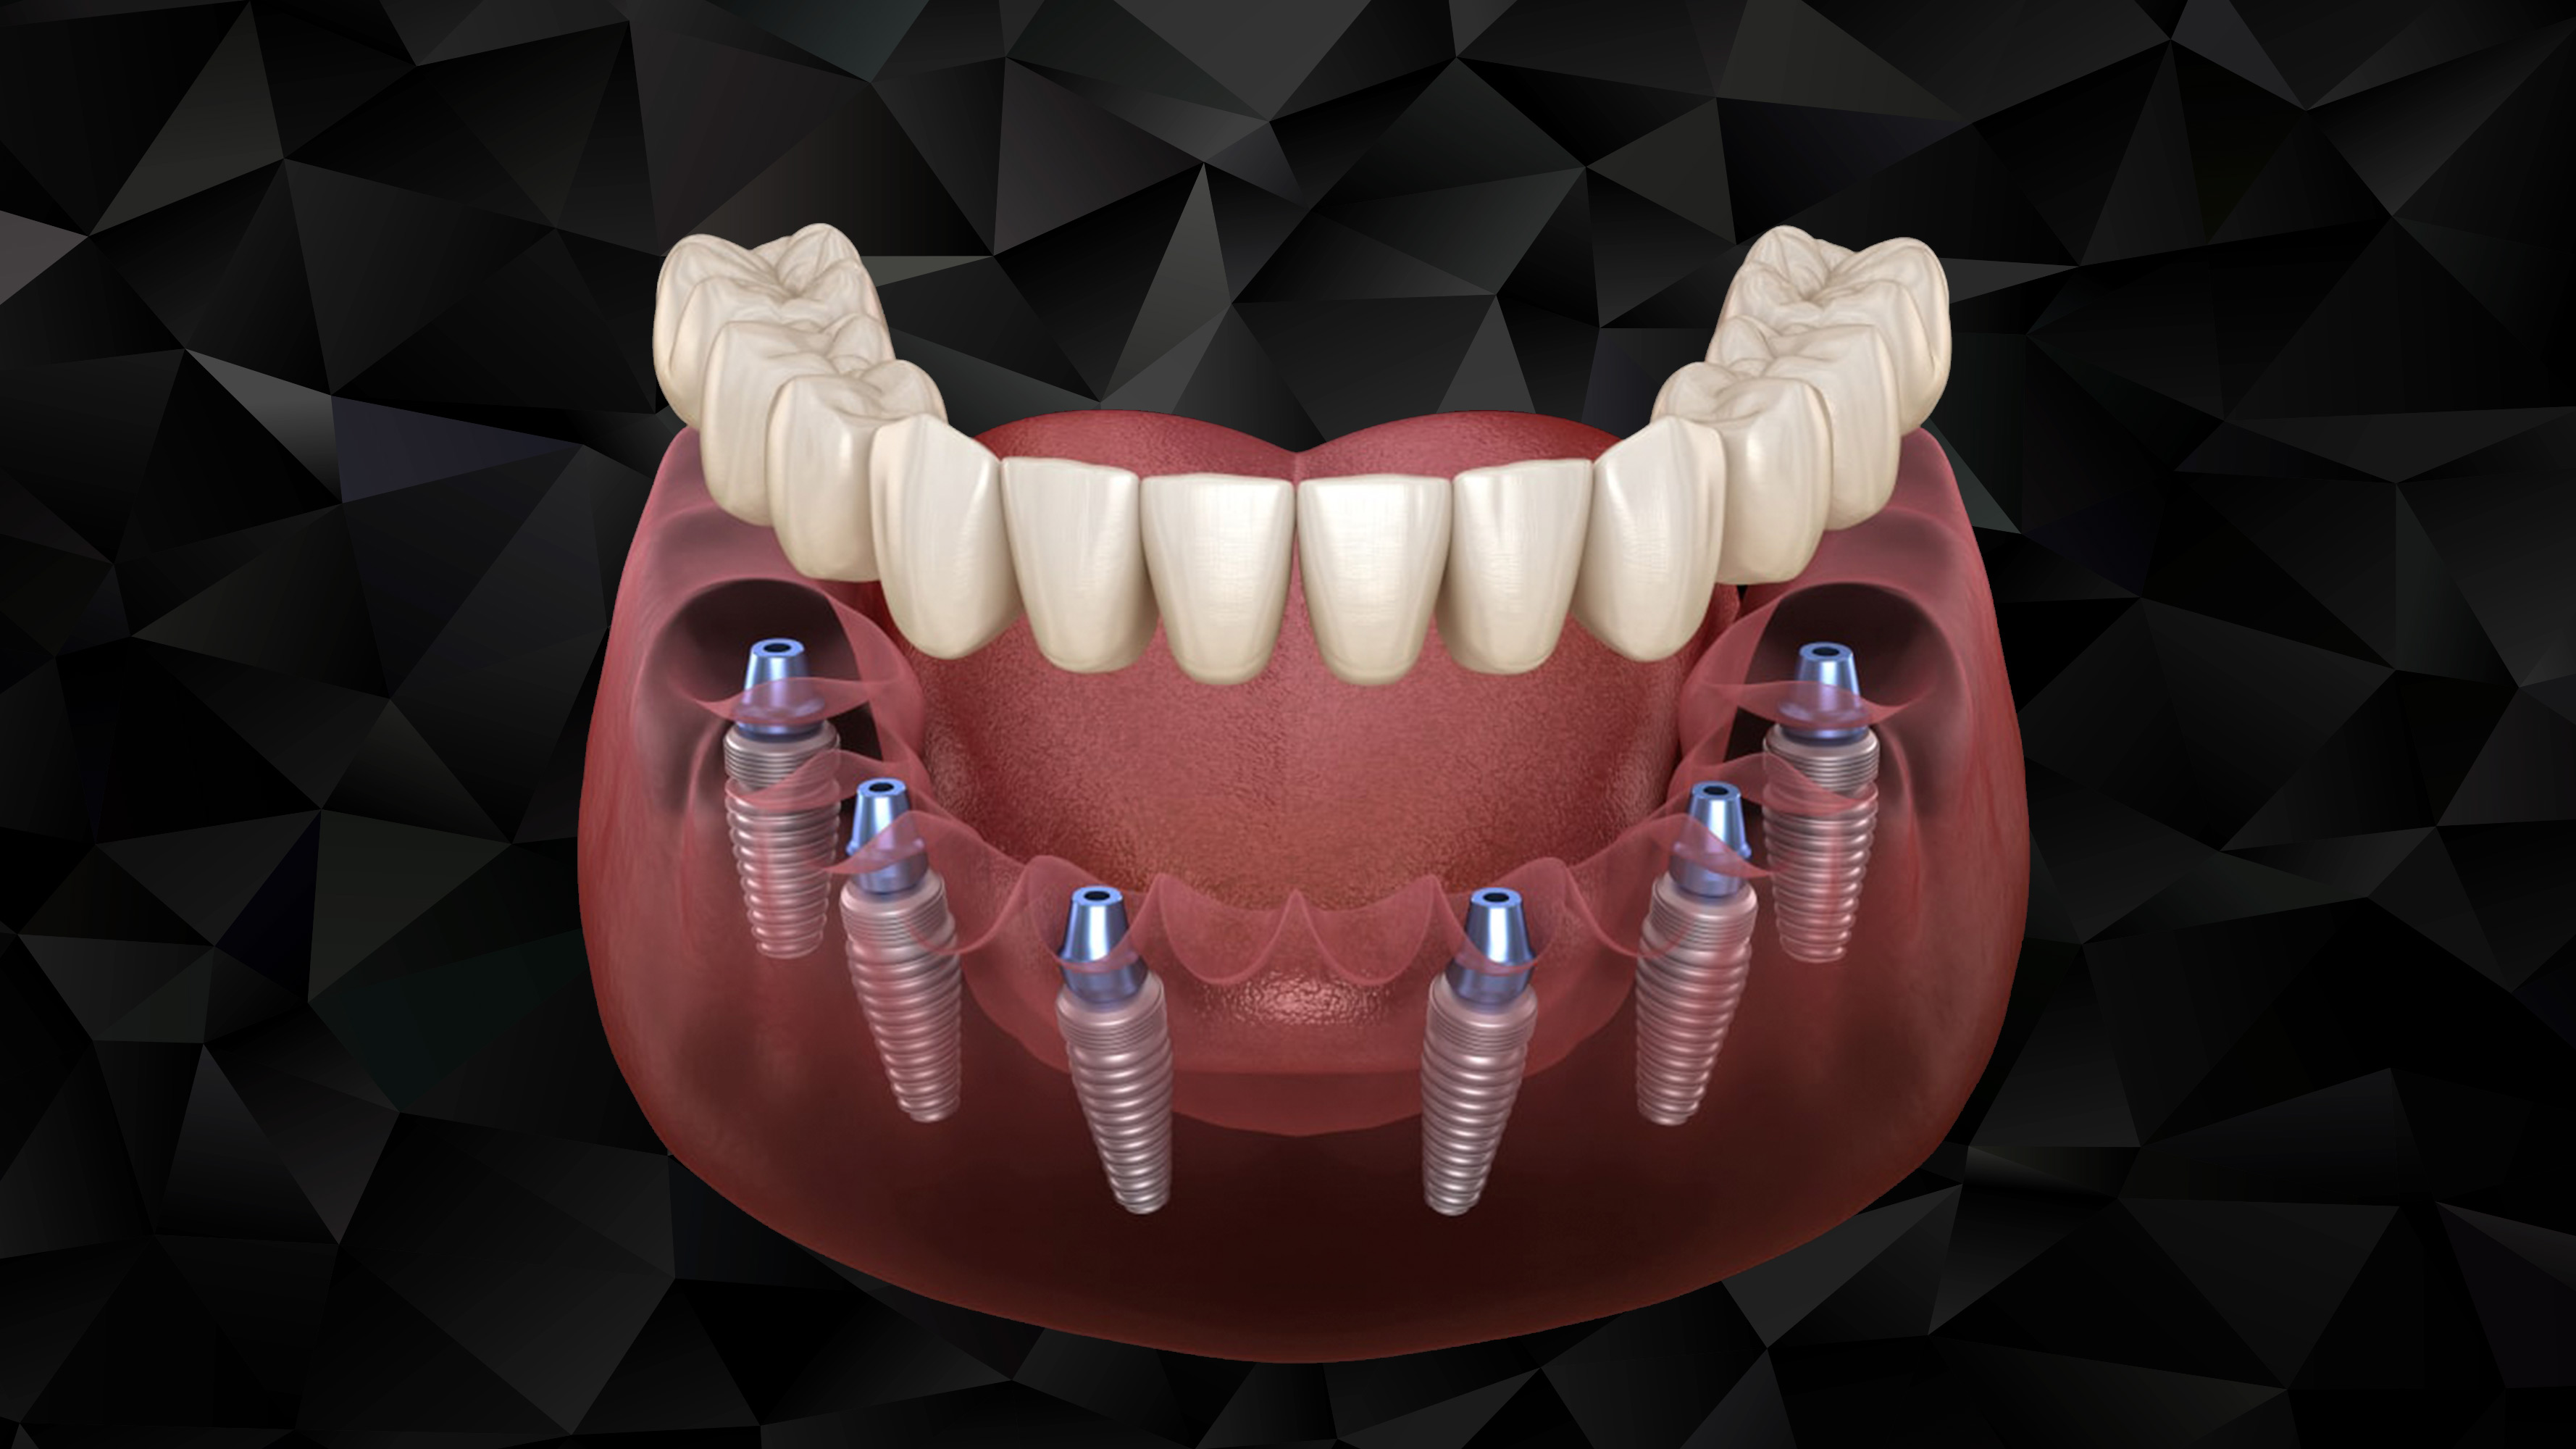 Имплантация зубов all on 6. Имплантация Neodent. Металлопластмассовый несъемный протез на 6 имплантах. Аллон 4 протезирование.